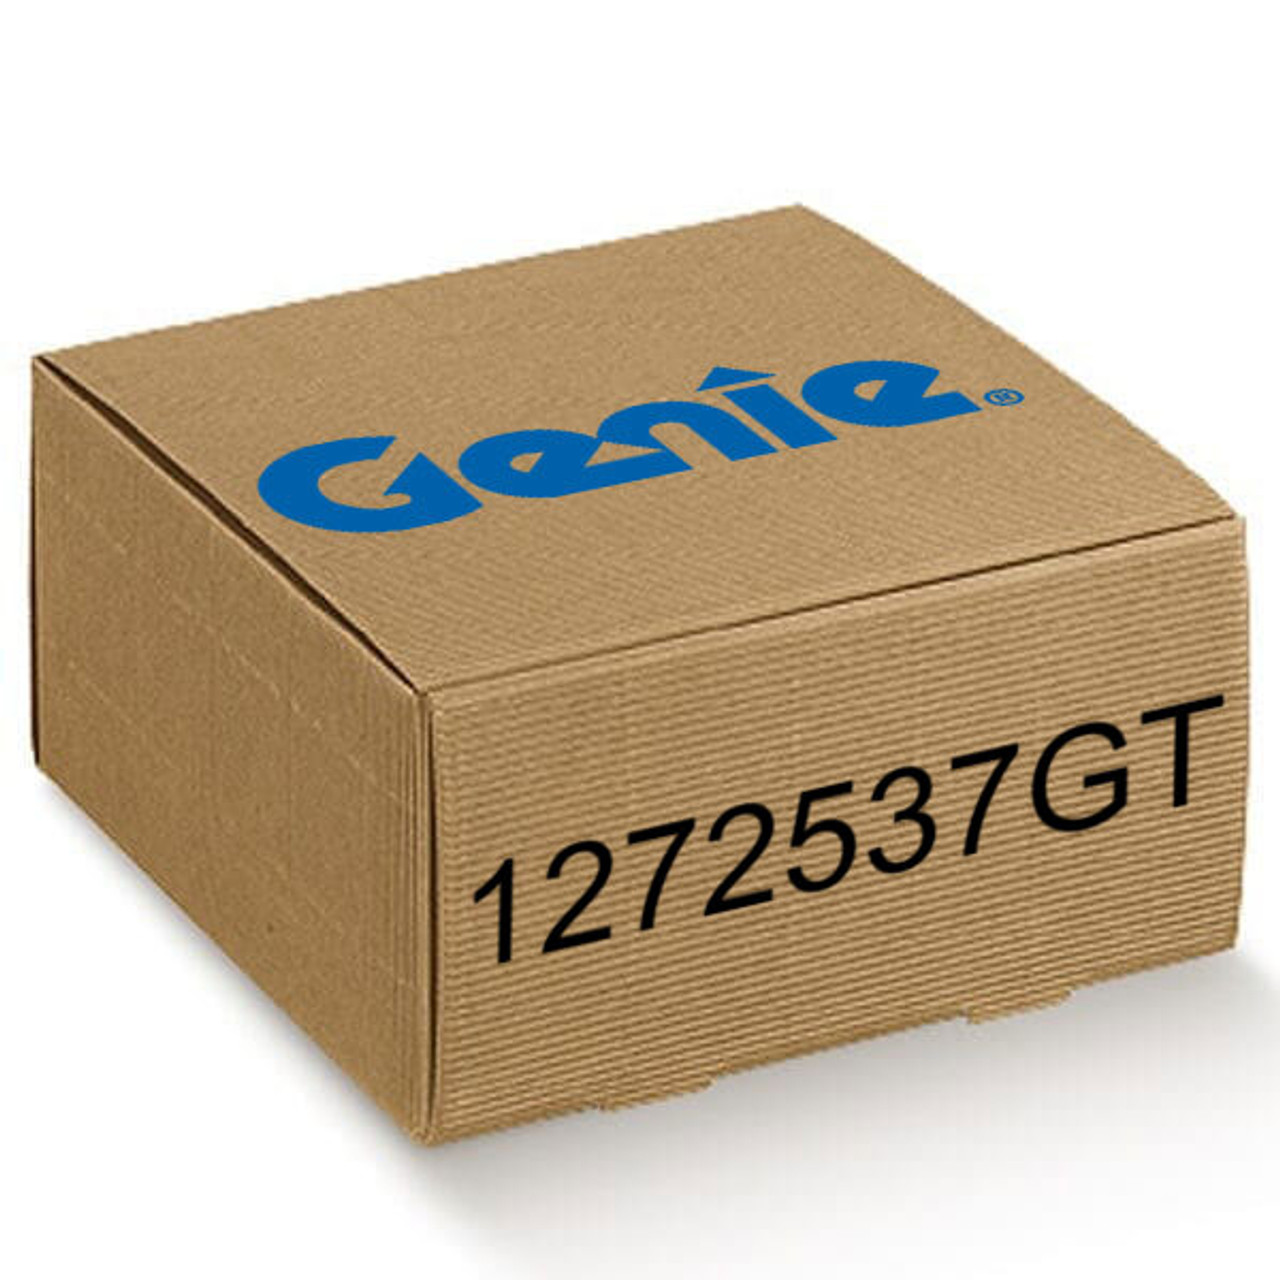 Assy Gen J-Box 3.0 Kw | Genie 1272537GT